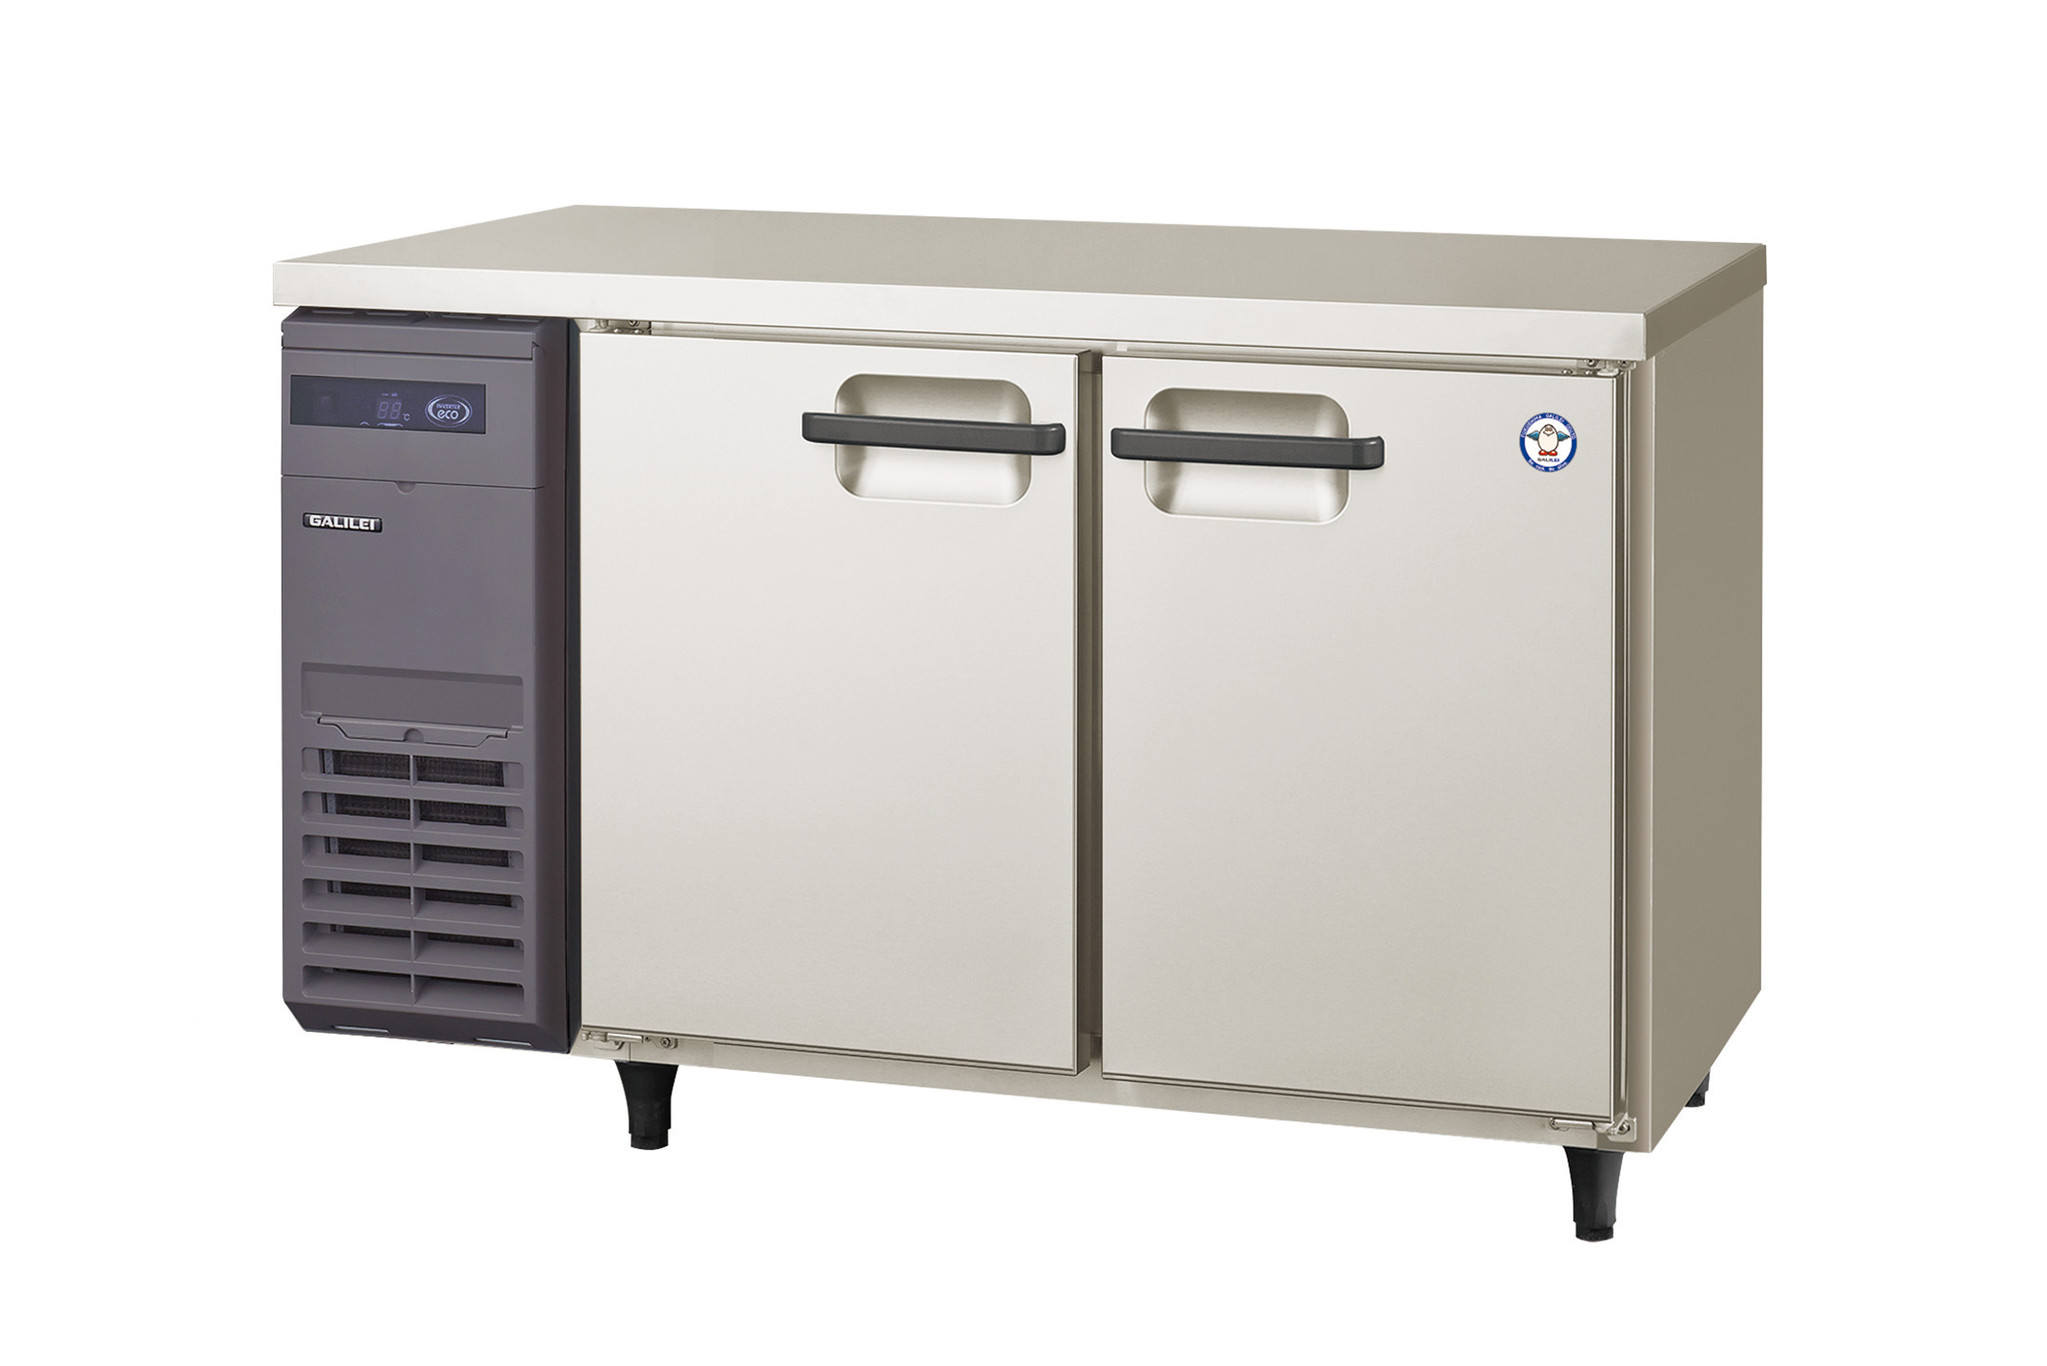 年末年始大決算 業務用厨房機器のまるごとKマートPanasonic パナソニック 旧サンヨー 《インバーター》冷凍庫 SRF-K681B  旧:SRF-K681 業務用 業務用冷凍庫